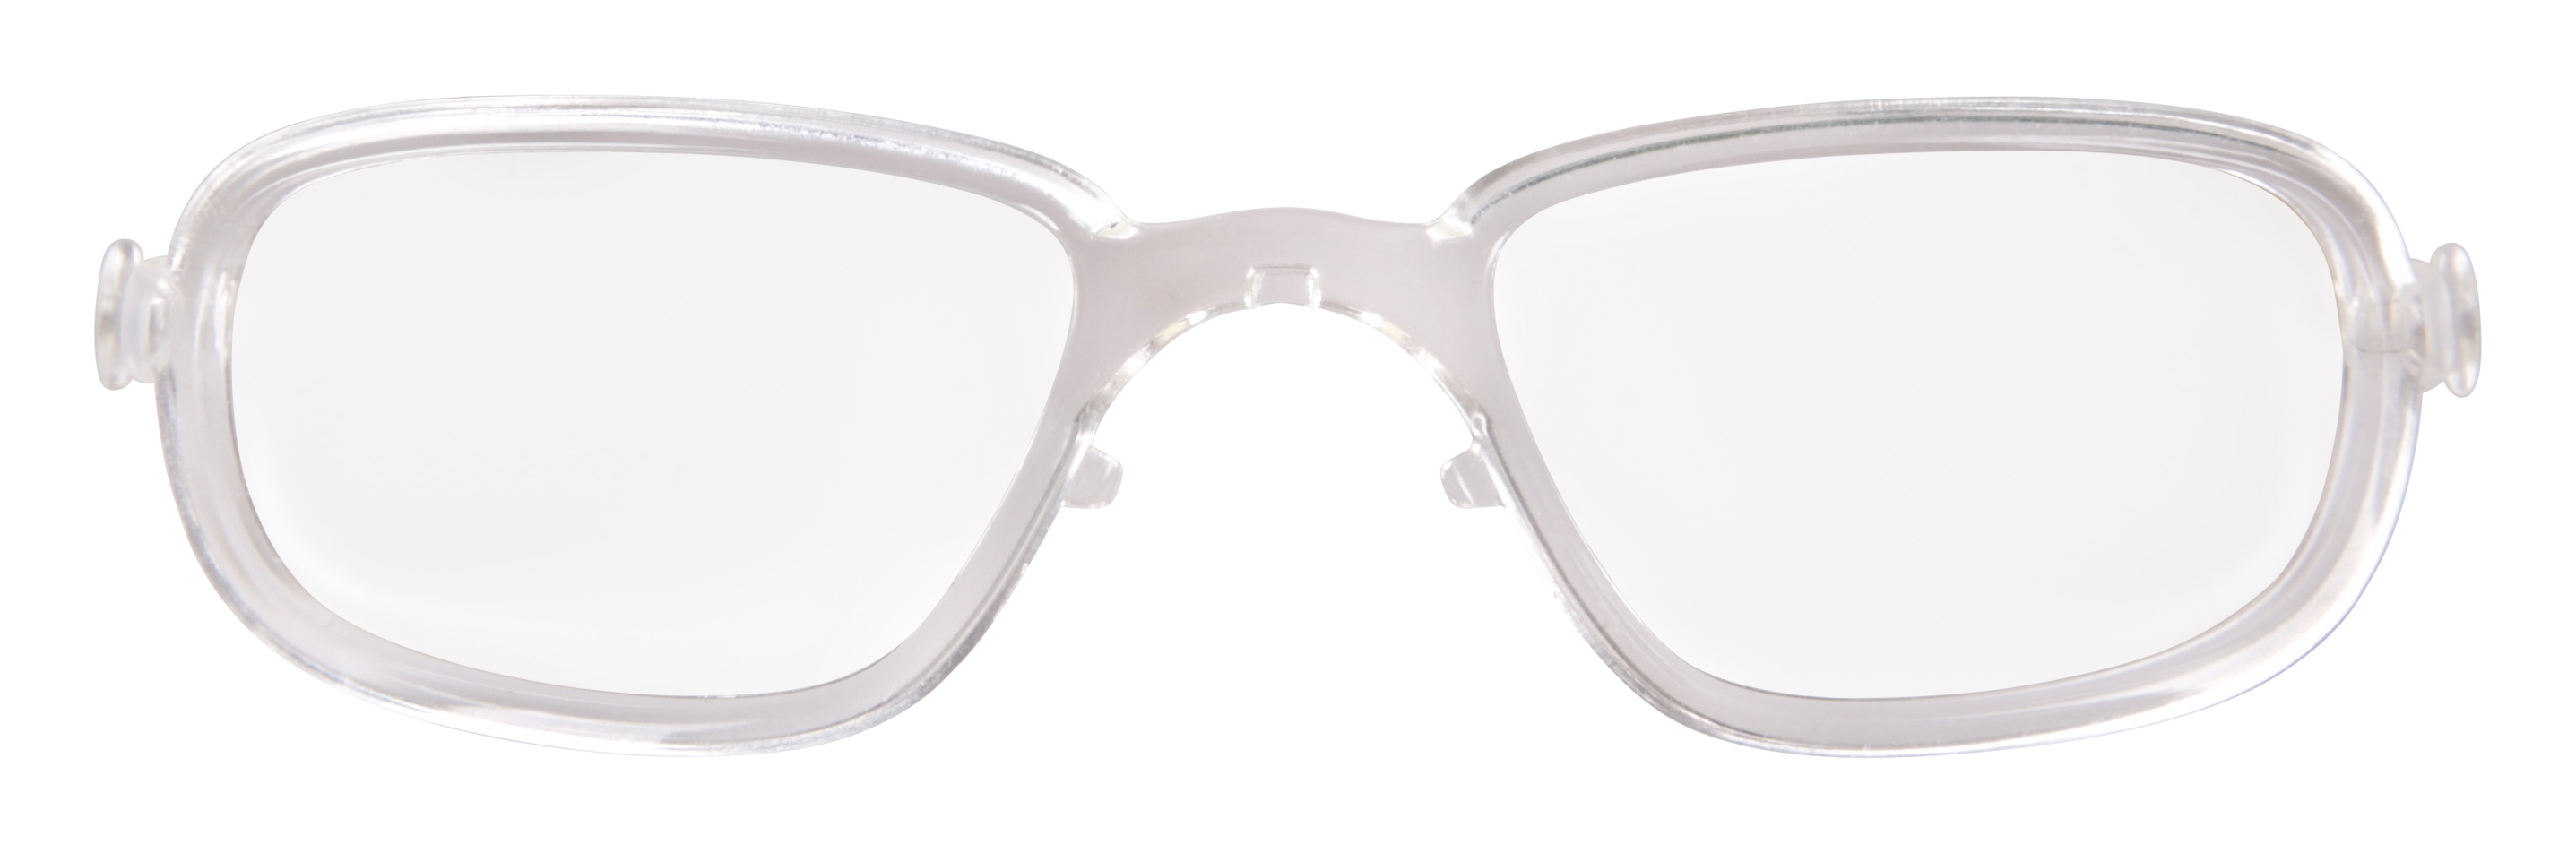 Plastový optický klip ATPRX3 do slunečních sportovních brýlí PROOF AT095, ROCKET AT98, DIABLO AT106 , FACTOR AT111 -